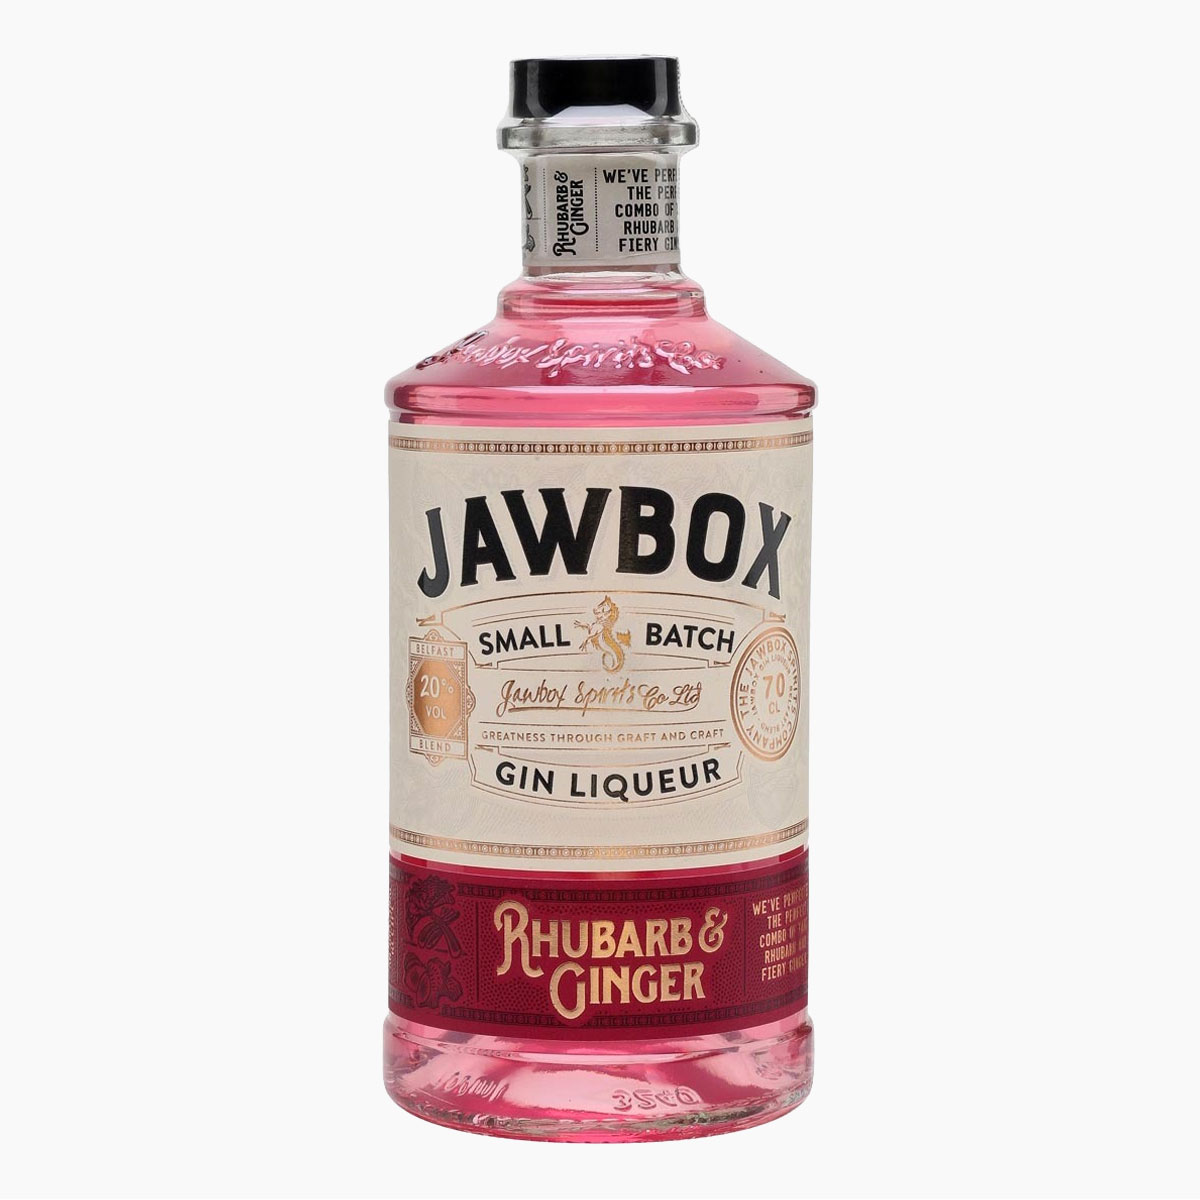 Brug Jawbox Rhubarb & Ginger Ginlikør til en forbedret oplevelse